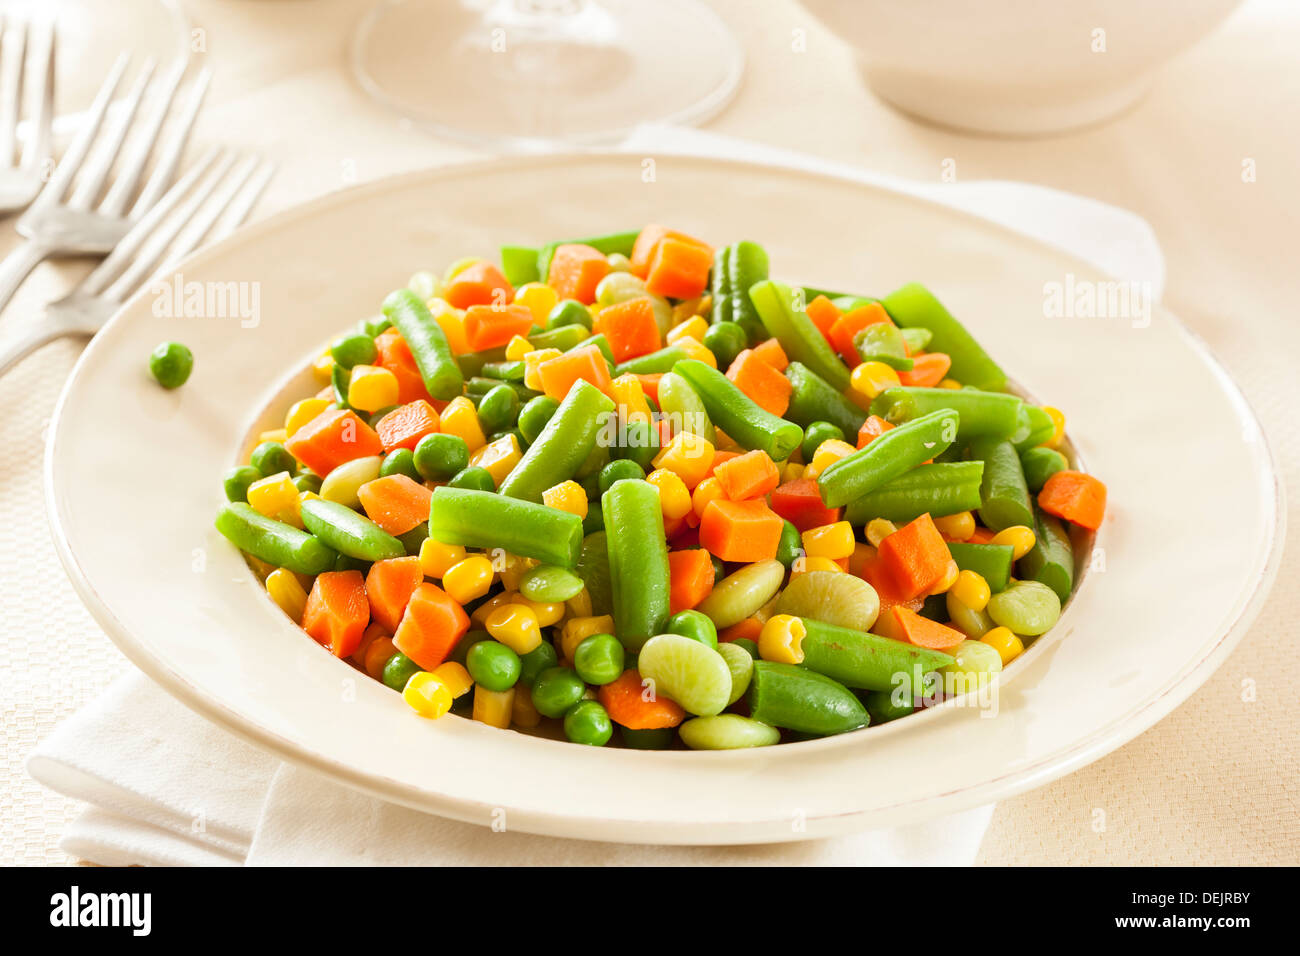 Al vapor verduras orgánicas Medly con guisantes, maíz, frijoles y zanahorias Foto de stock